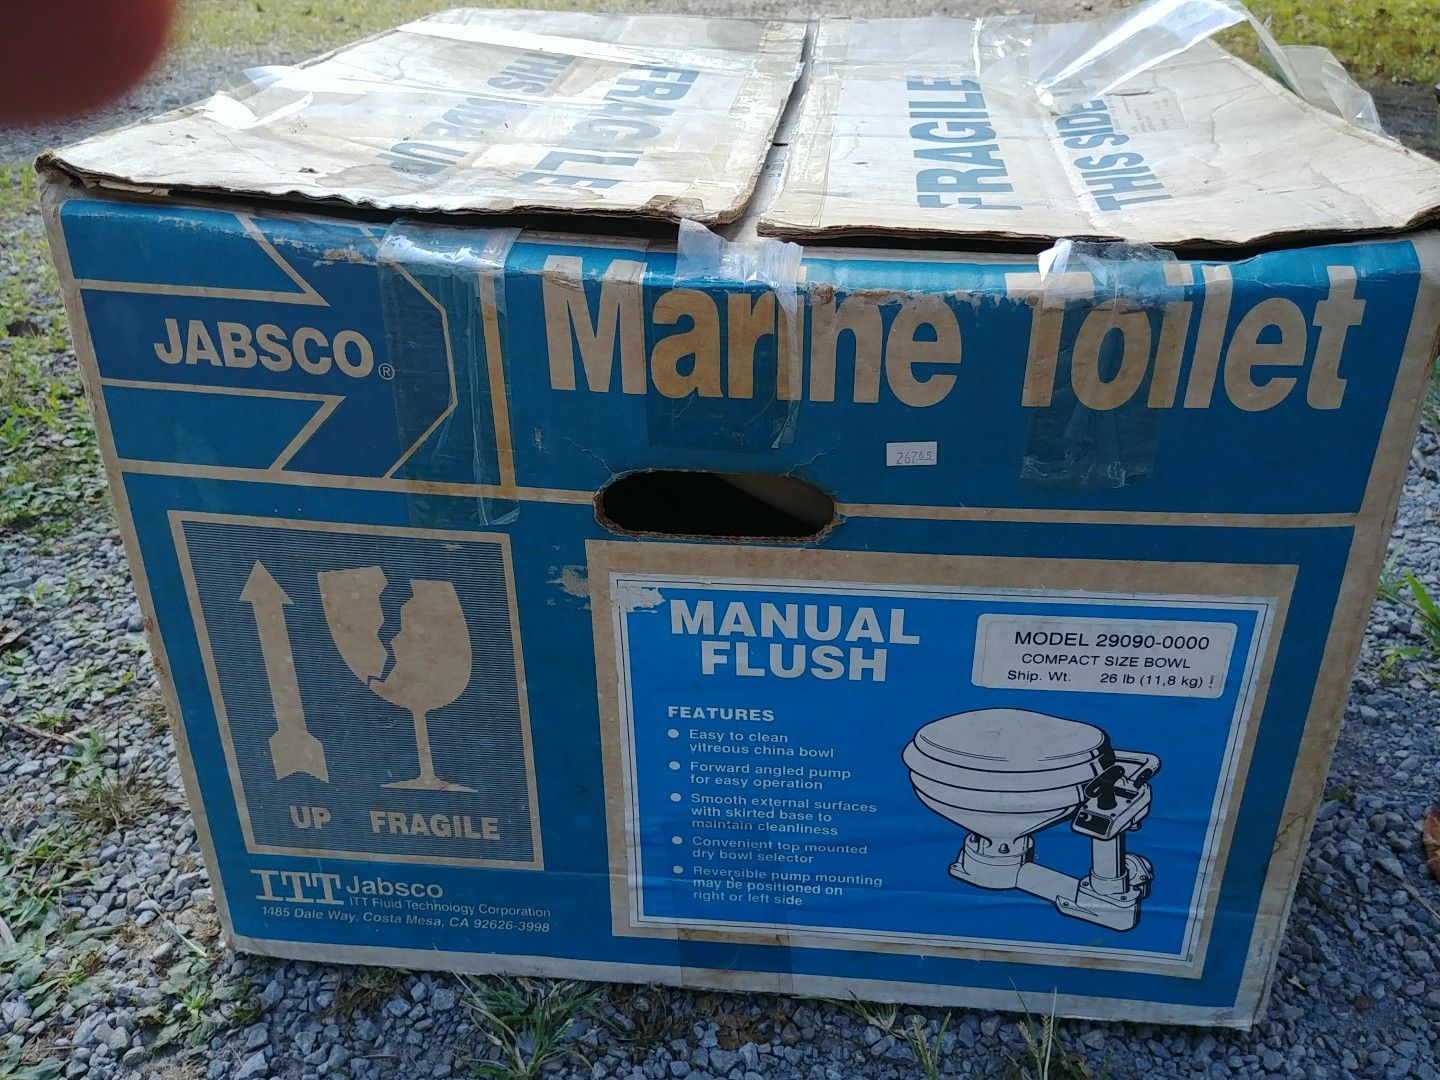 Unused boat toilet